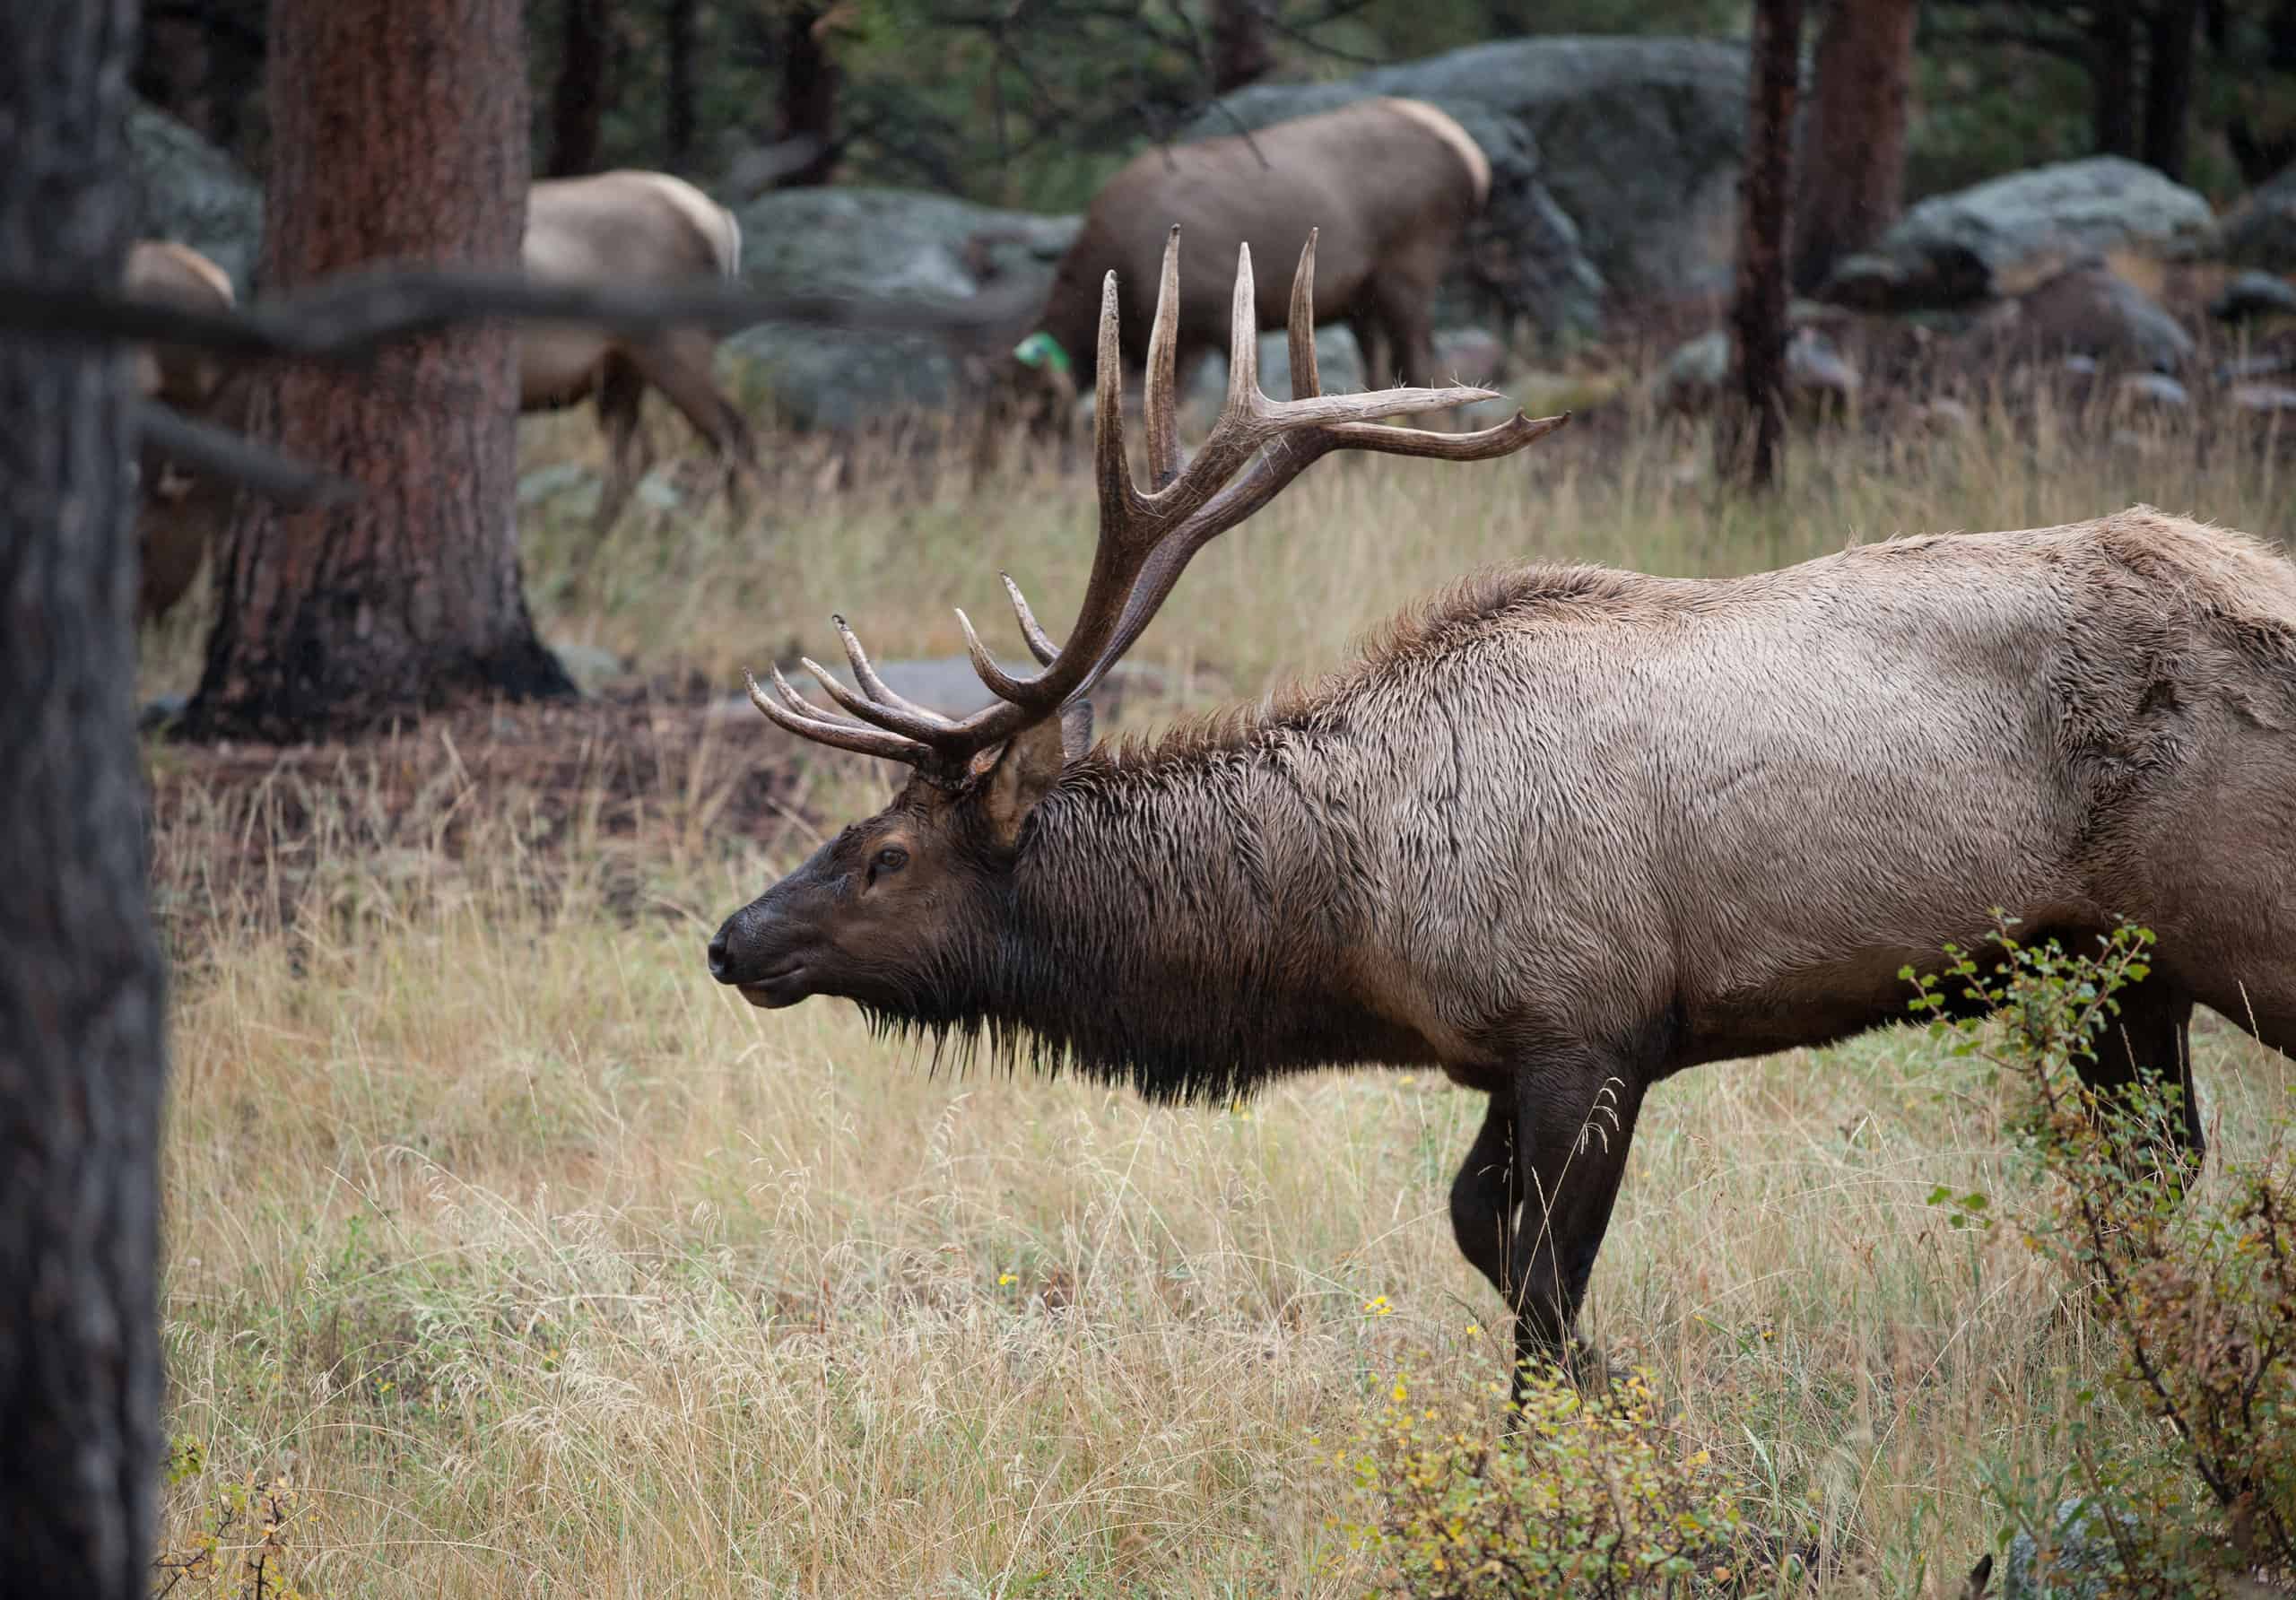 A large bull elk standing in an open meadow